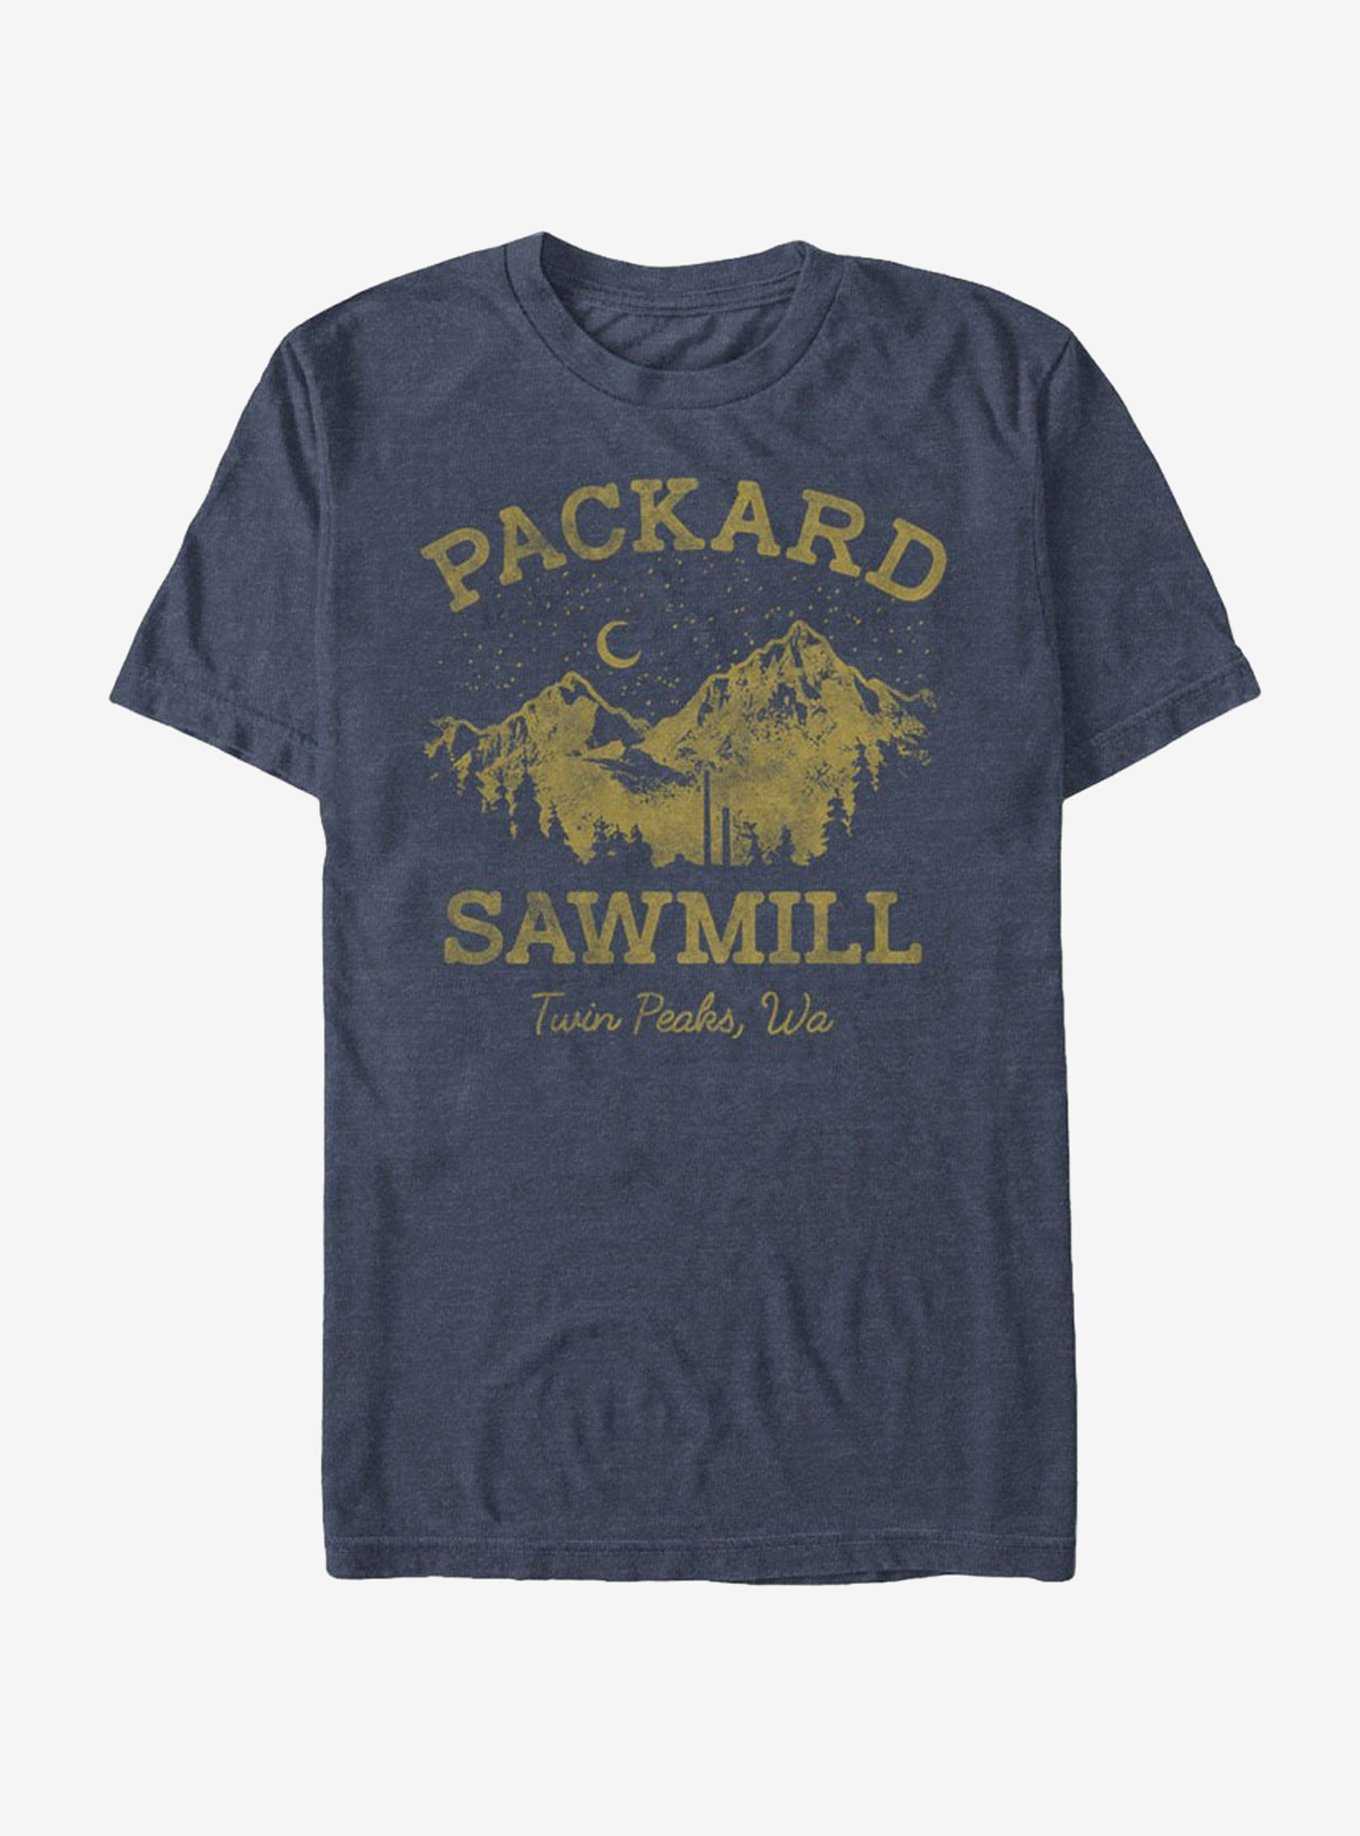 Twin Peaks Packard Sawmill T-Shirt, , hi-res